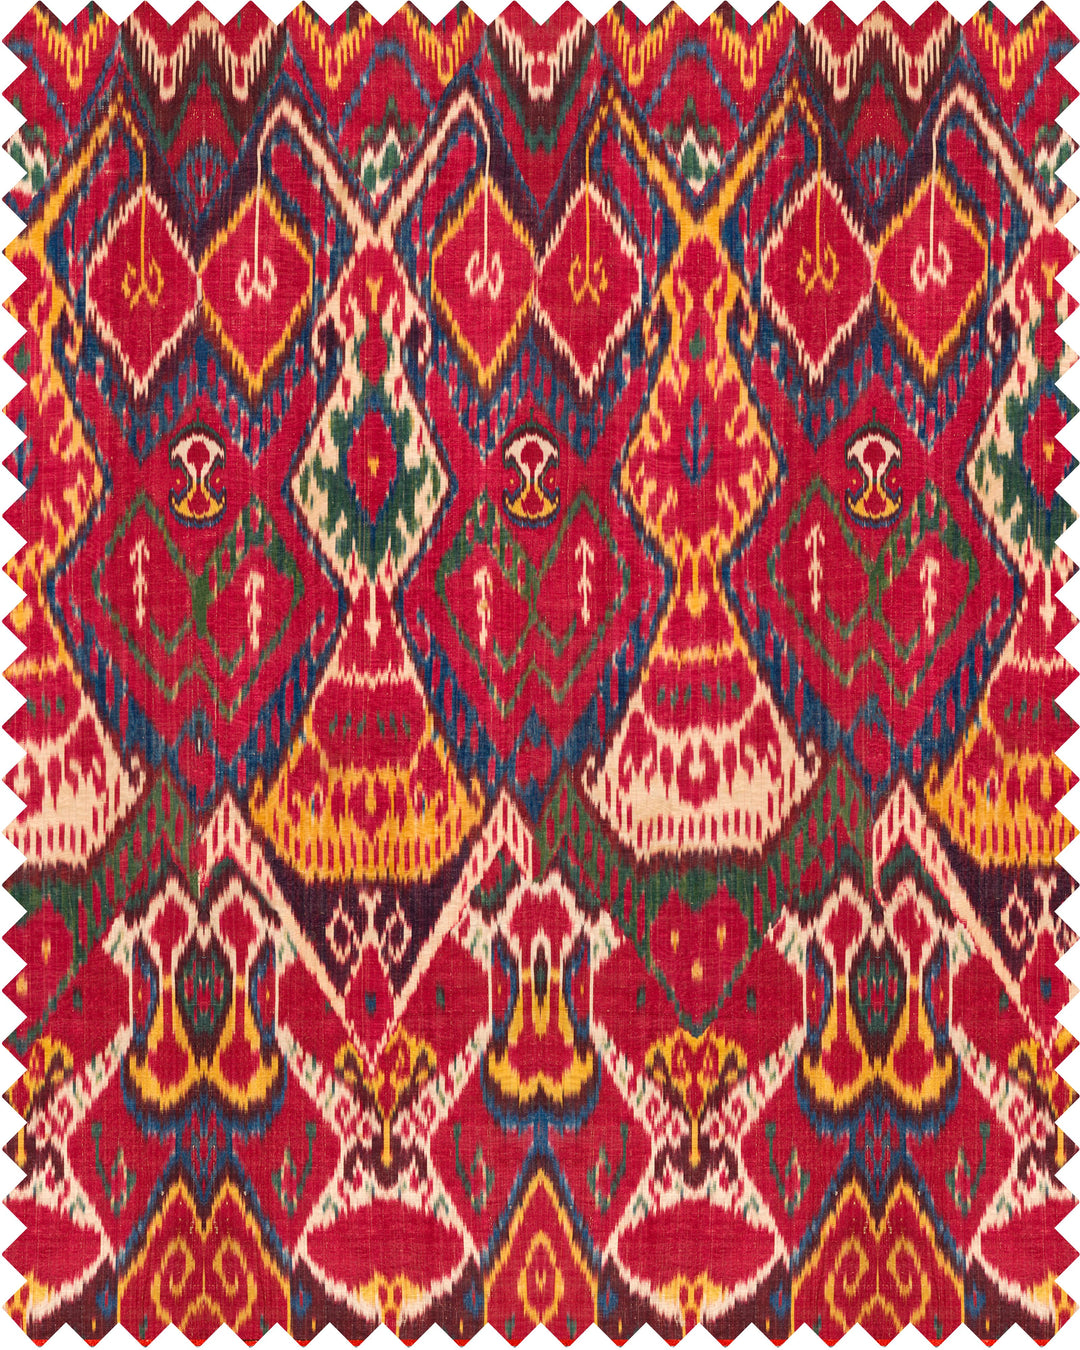 uzbek-vinatge-linen-printed-fabric-designer-mindthegap